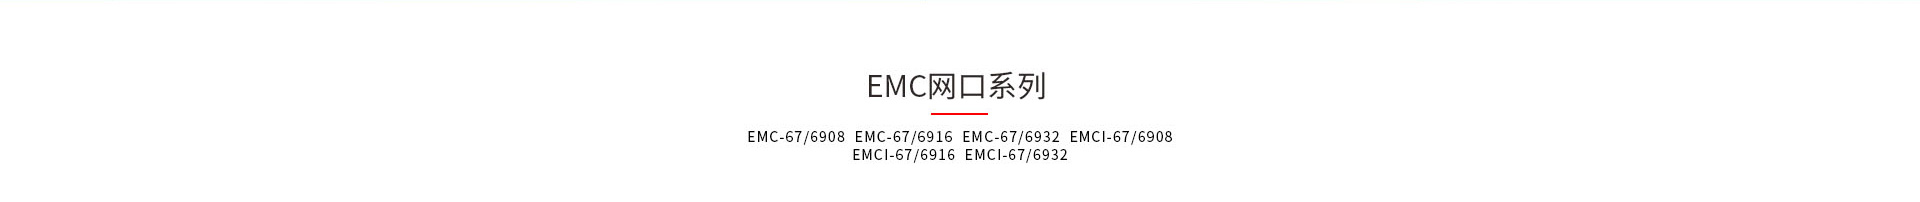 神盾卫士EMC和EMCI系列kvm切换器产品型号大全